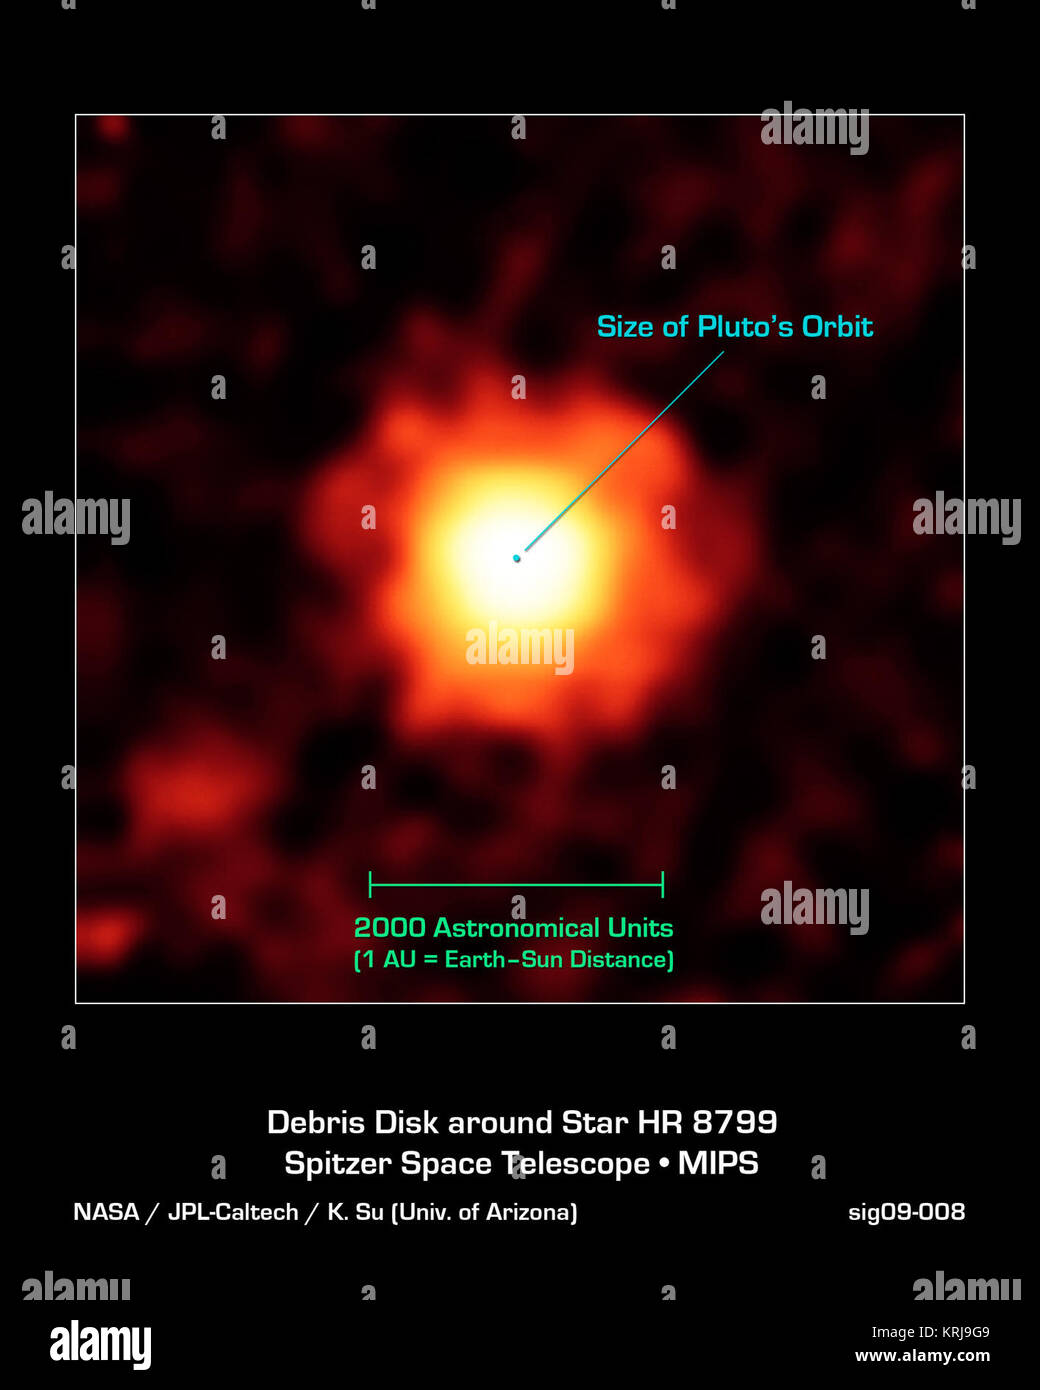 NASA il telescopio spaziale Spitzer catturato questa immagine a infrarossi di un gigante di alone di polvere molto fine attorno al giovane stella HR 8799, situato a 129 anni luce di distanza nella costellazione Pegasus. Le parti più luminose di questa nube di polvere (bianco-giallo) probabilmente provengono dall'esterno disco freddo simile alla nostra Kuiper Belt (al di là del Nettuno orbit). L'enorme esteso alone di polvere viene visto come il rosso-arancione. Gli astronomi pensano che i tre grandi pianeti conosciuti in orbita la stella sono inquietanti piccola comet-come corpi, facendoli collidere e calci di polvere. L'esteso alone di polvere ha un diametro di circa duemila astronomi Foto Stock